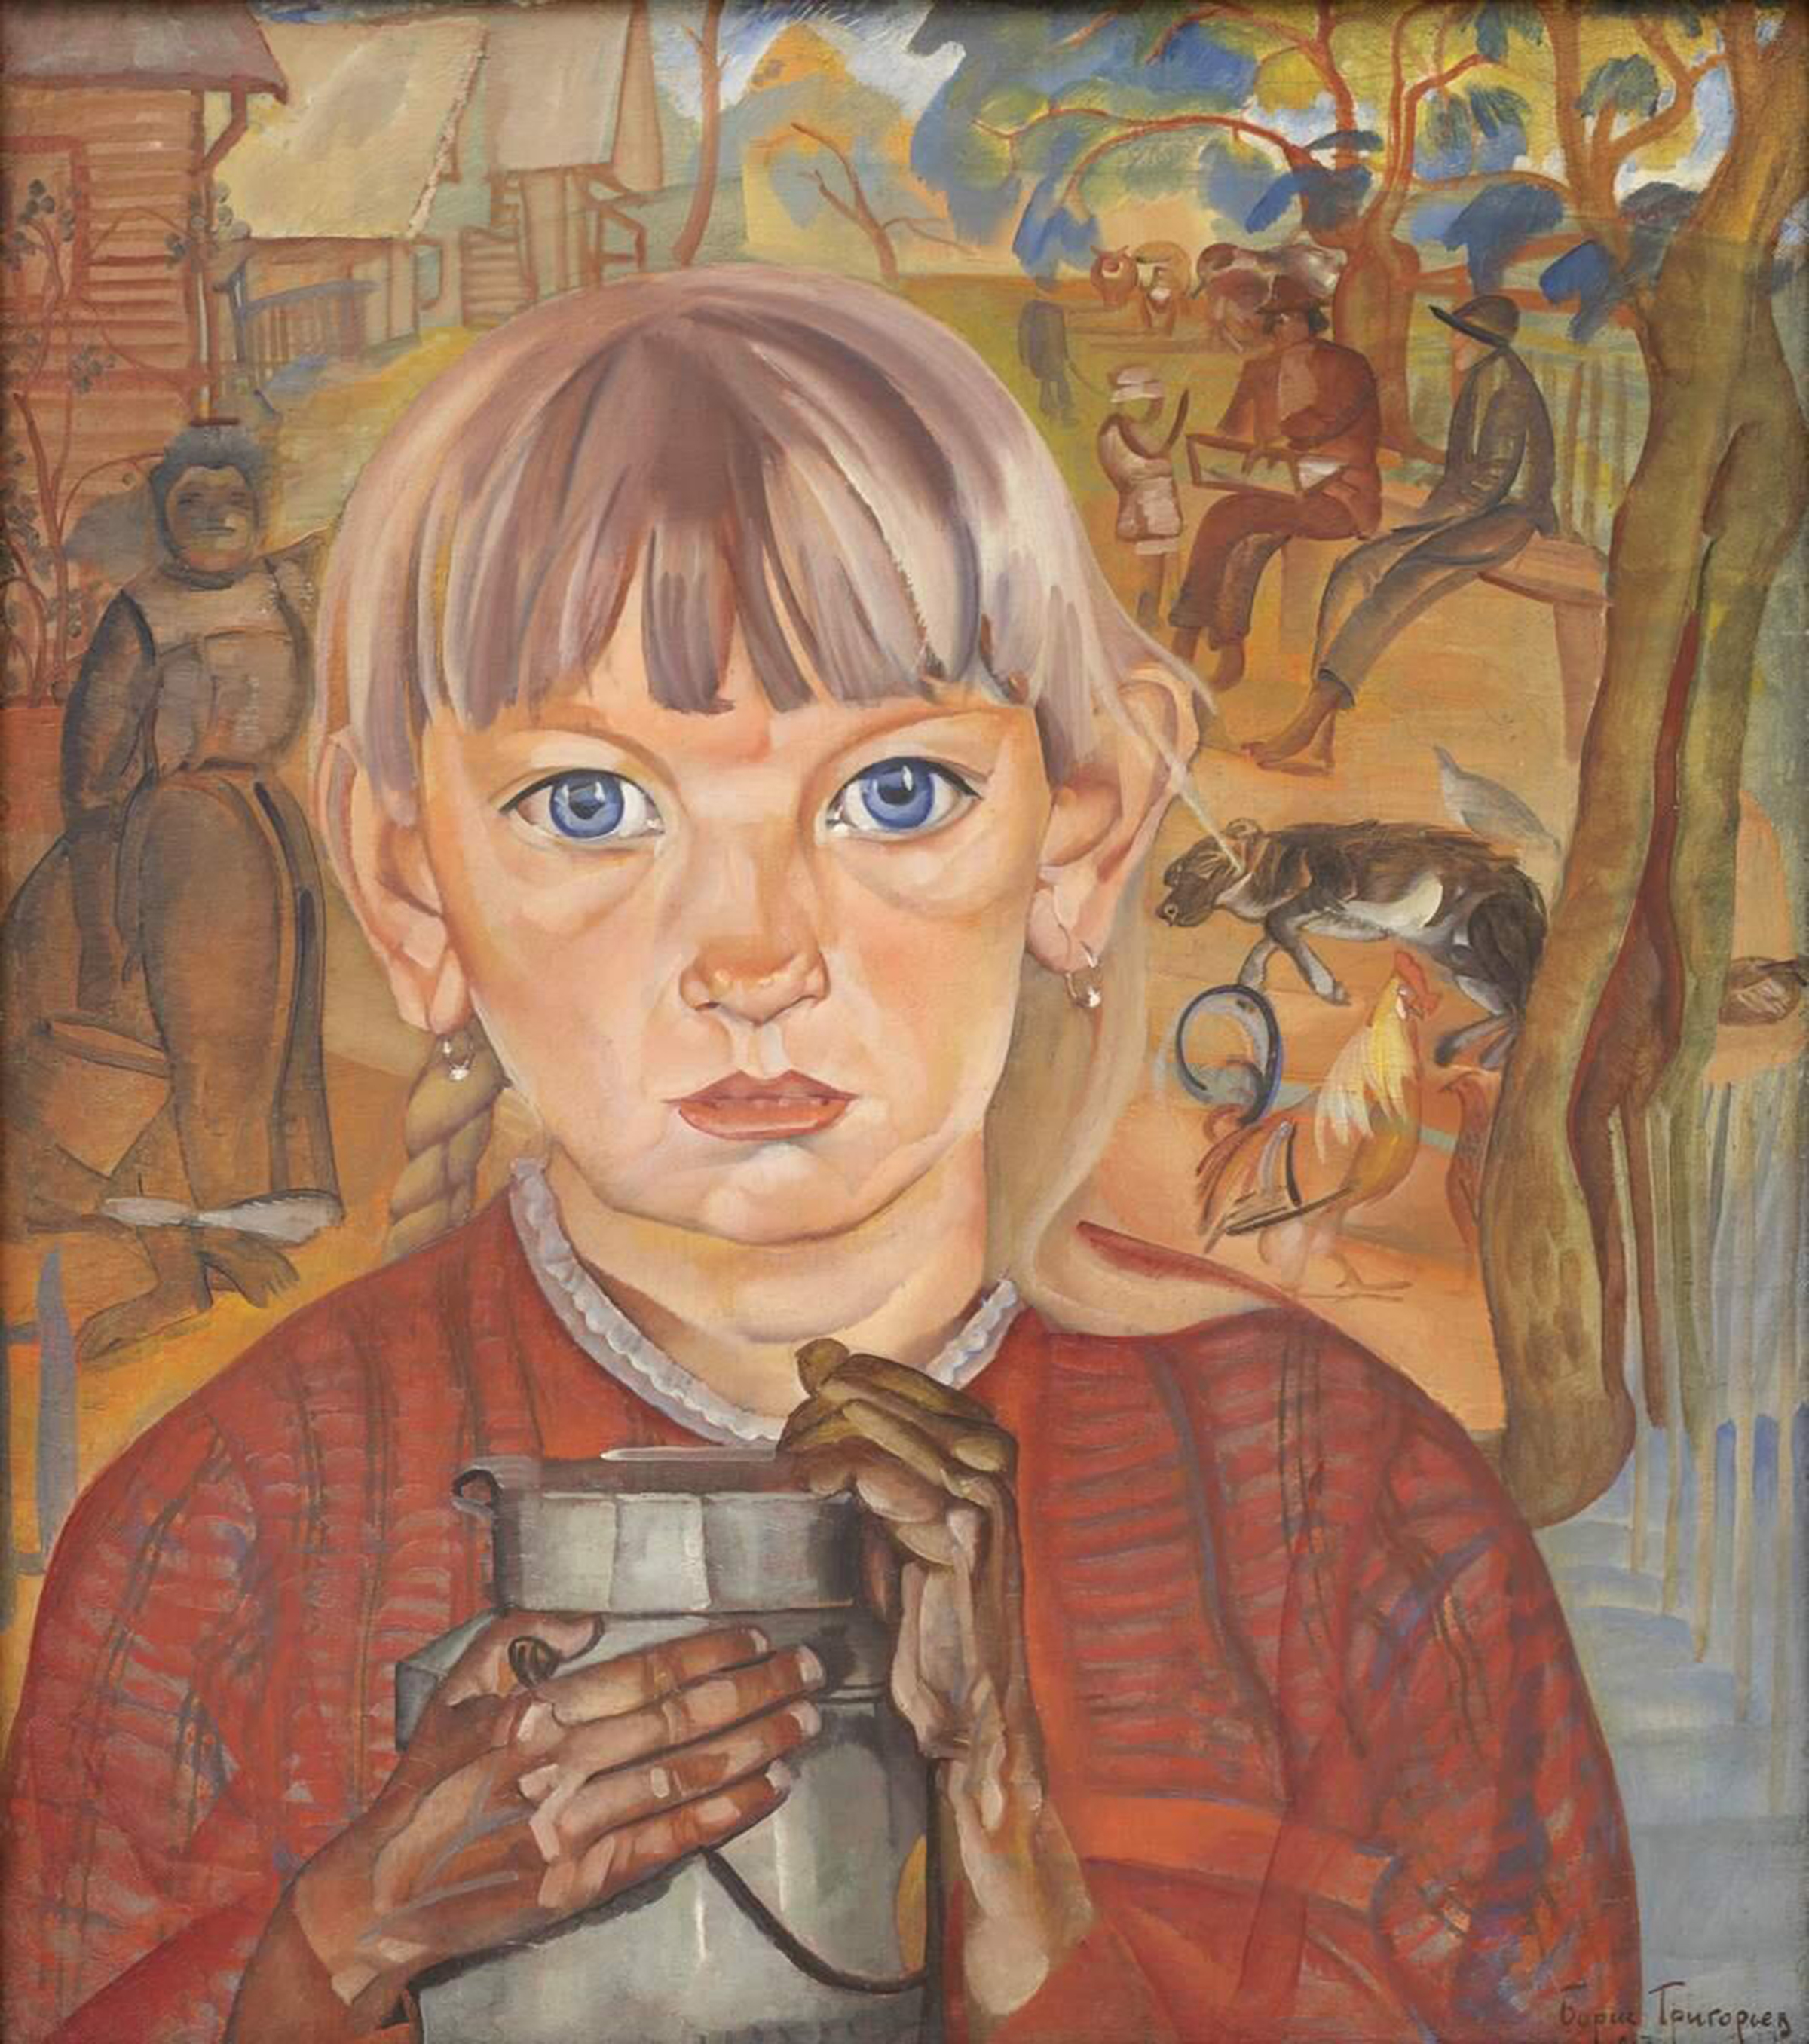 Mädchen mit Milchkanne (Morgen im Dorf) by Boris Dmitriyevich Grigoriev - 1917 - 71 х 62 cm Russisches Museum